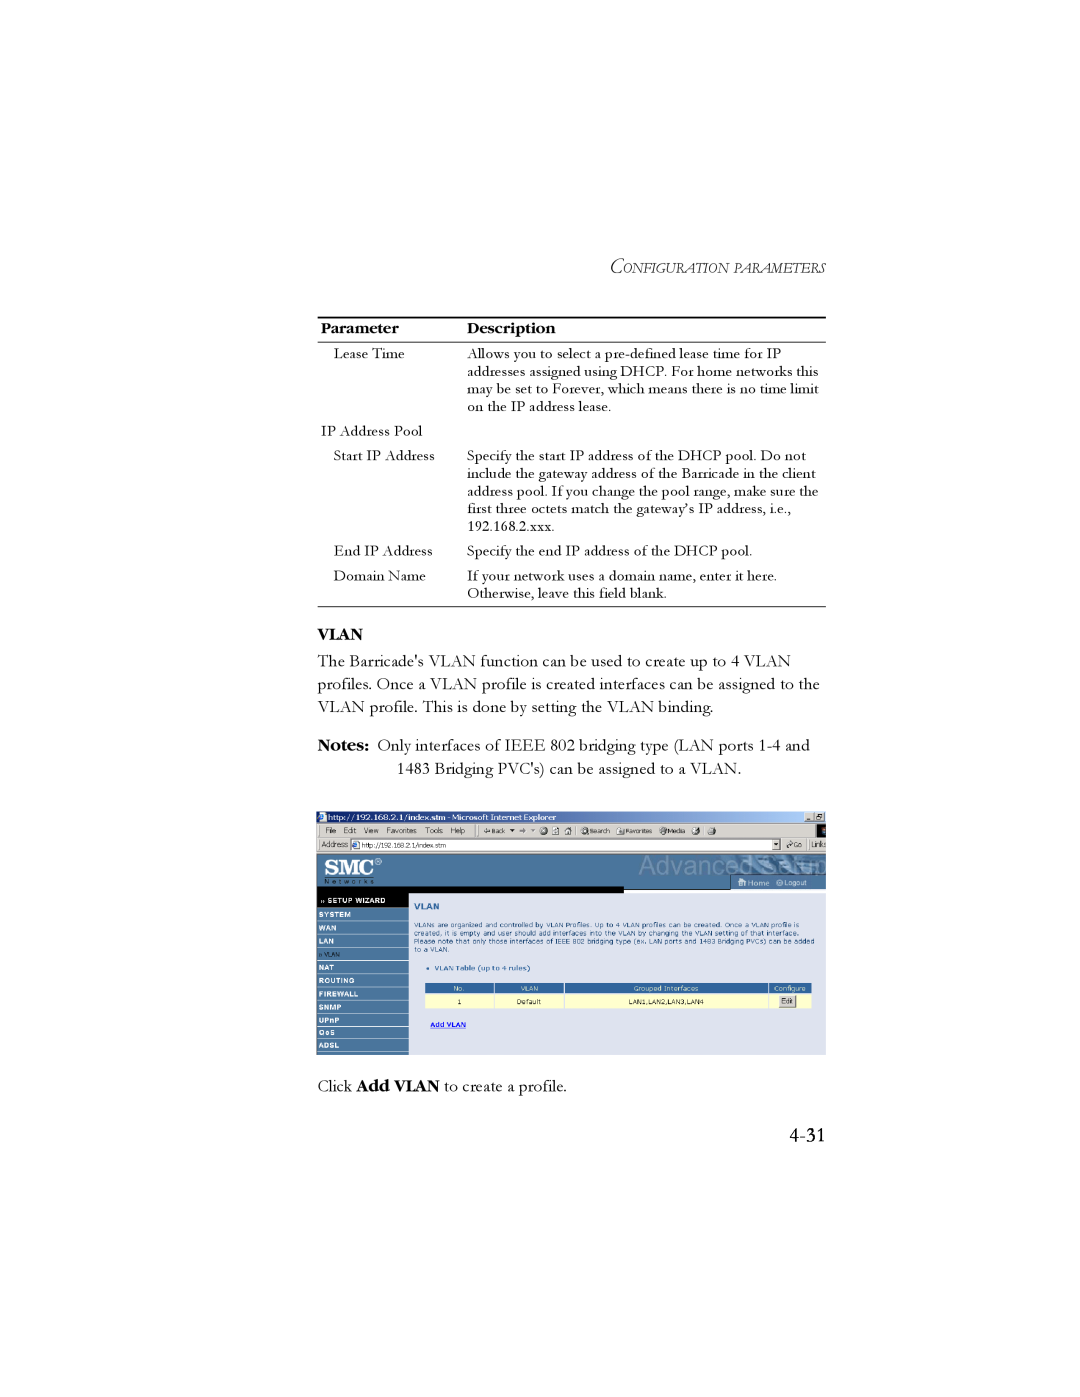 SMC Networks SMC7904BRB2 manual 4-31, Vlan 